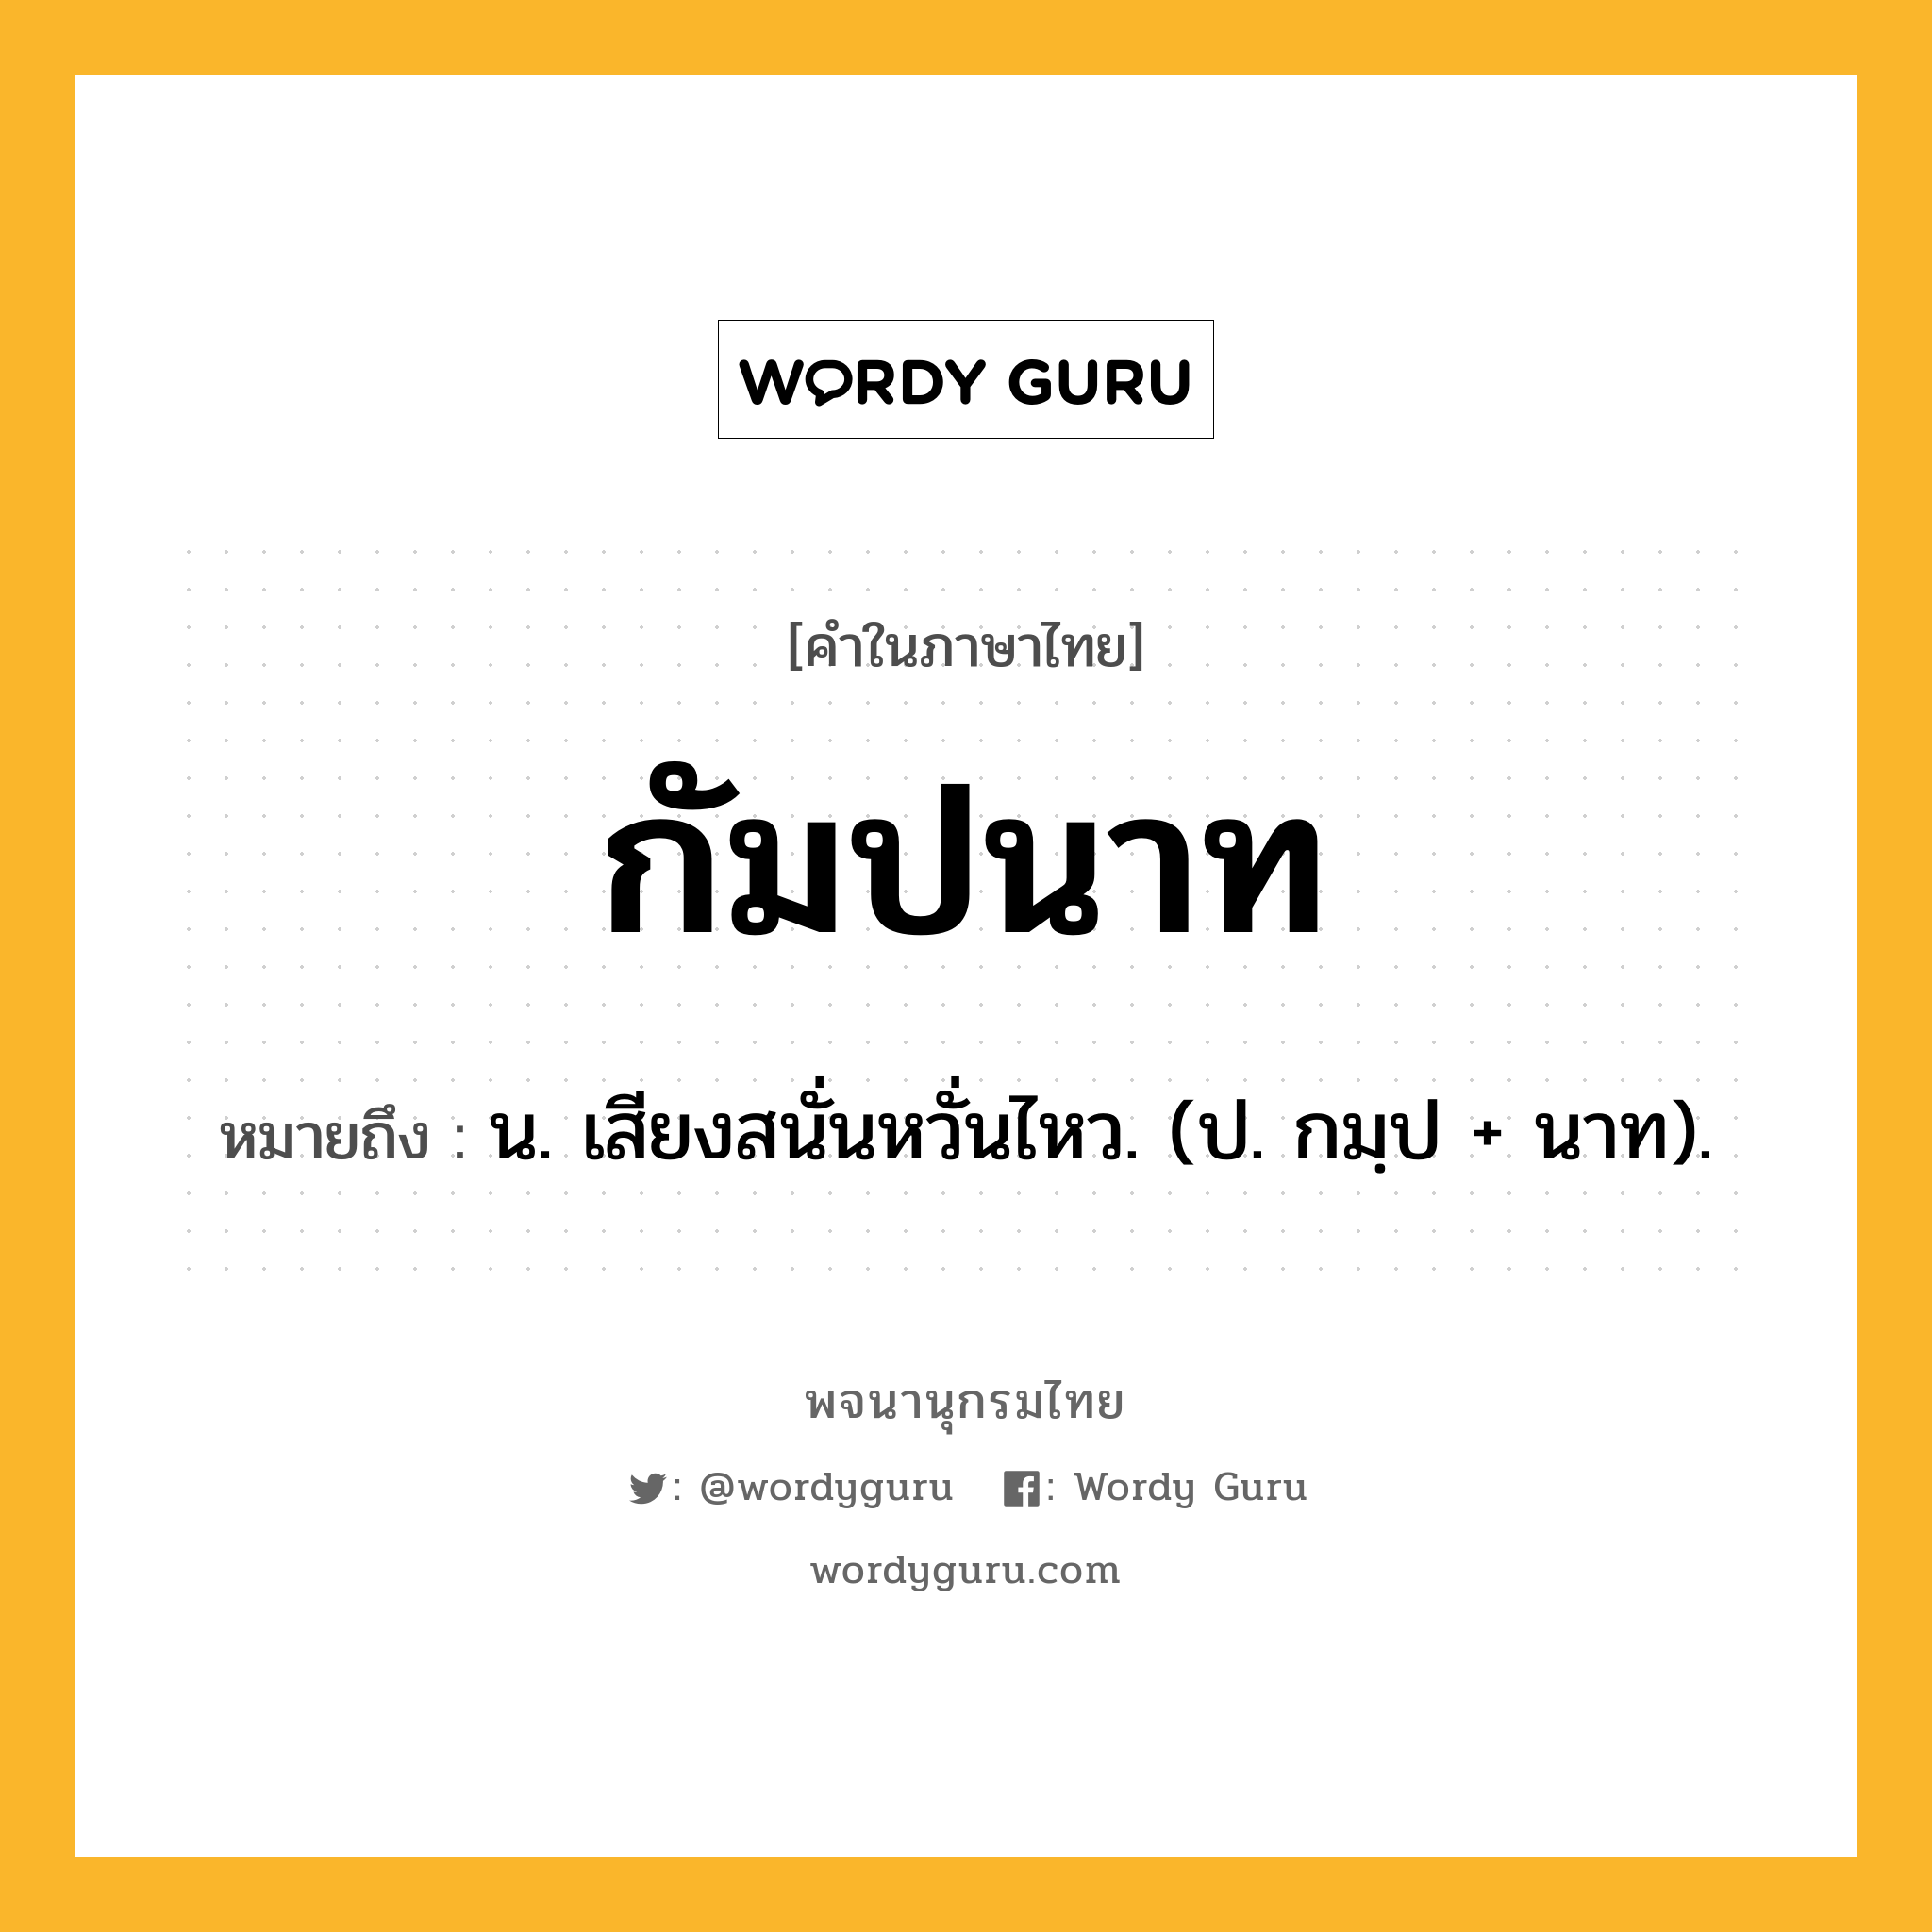 กัมปนาท หมายถึงอะไร?, คำในภาษาไทย กัมปนาท หมายถึง น. เสียงสนั่นหวั่นไหว. (ป. กมฺป + นาท).